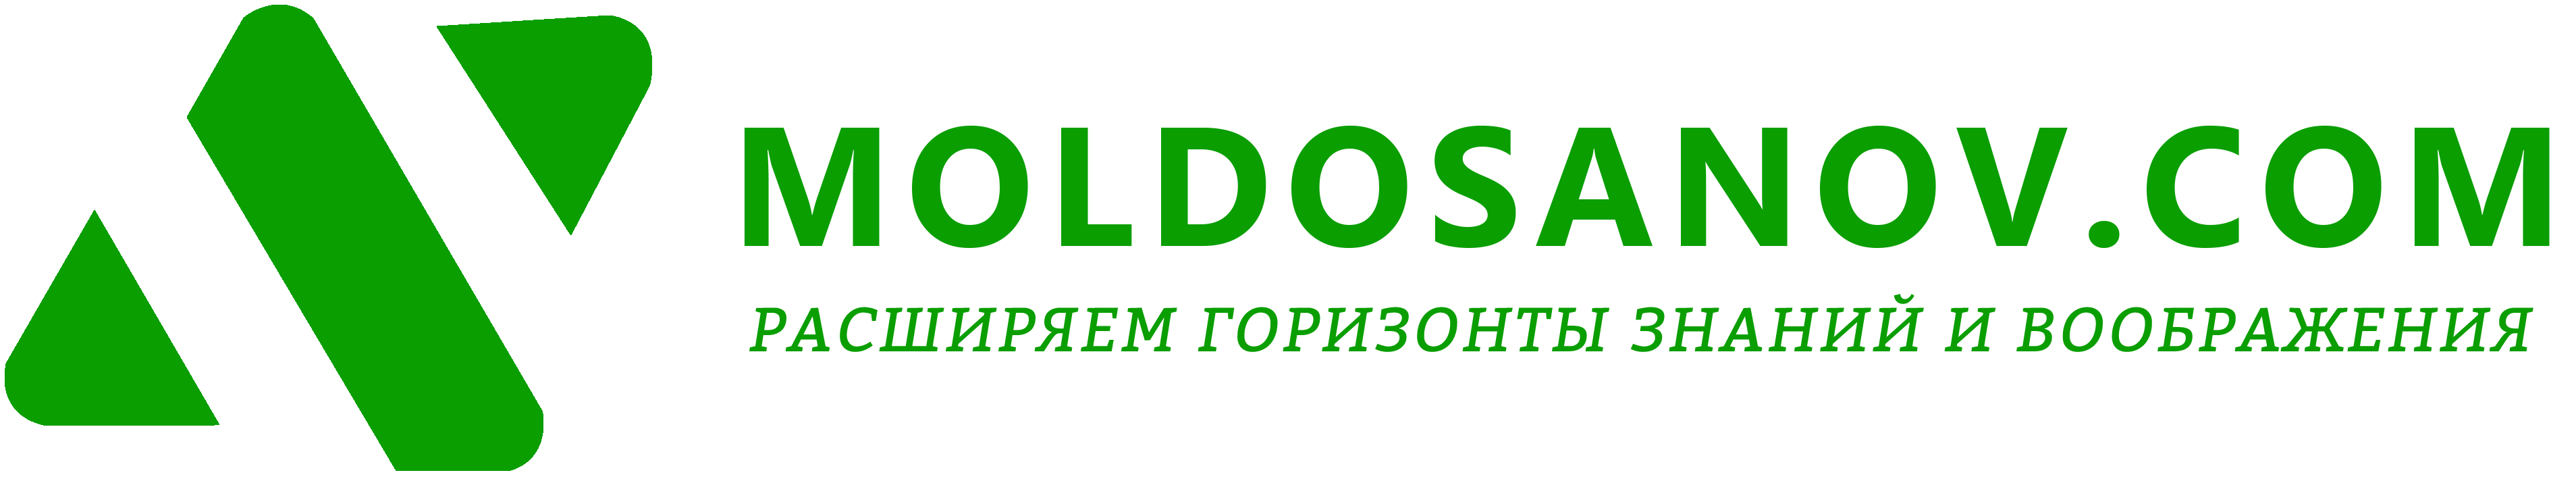 MOLDOSANOV.COM